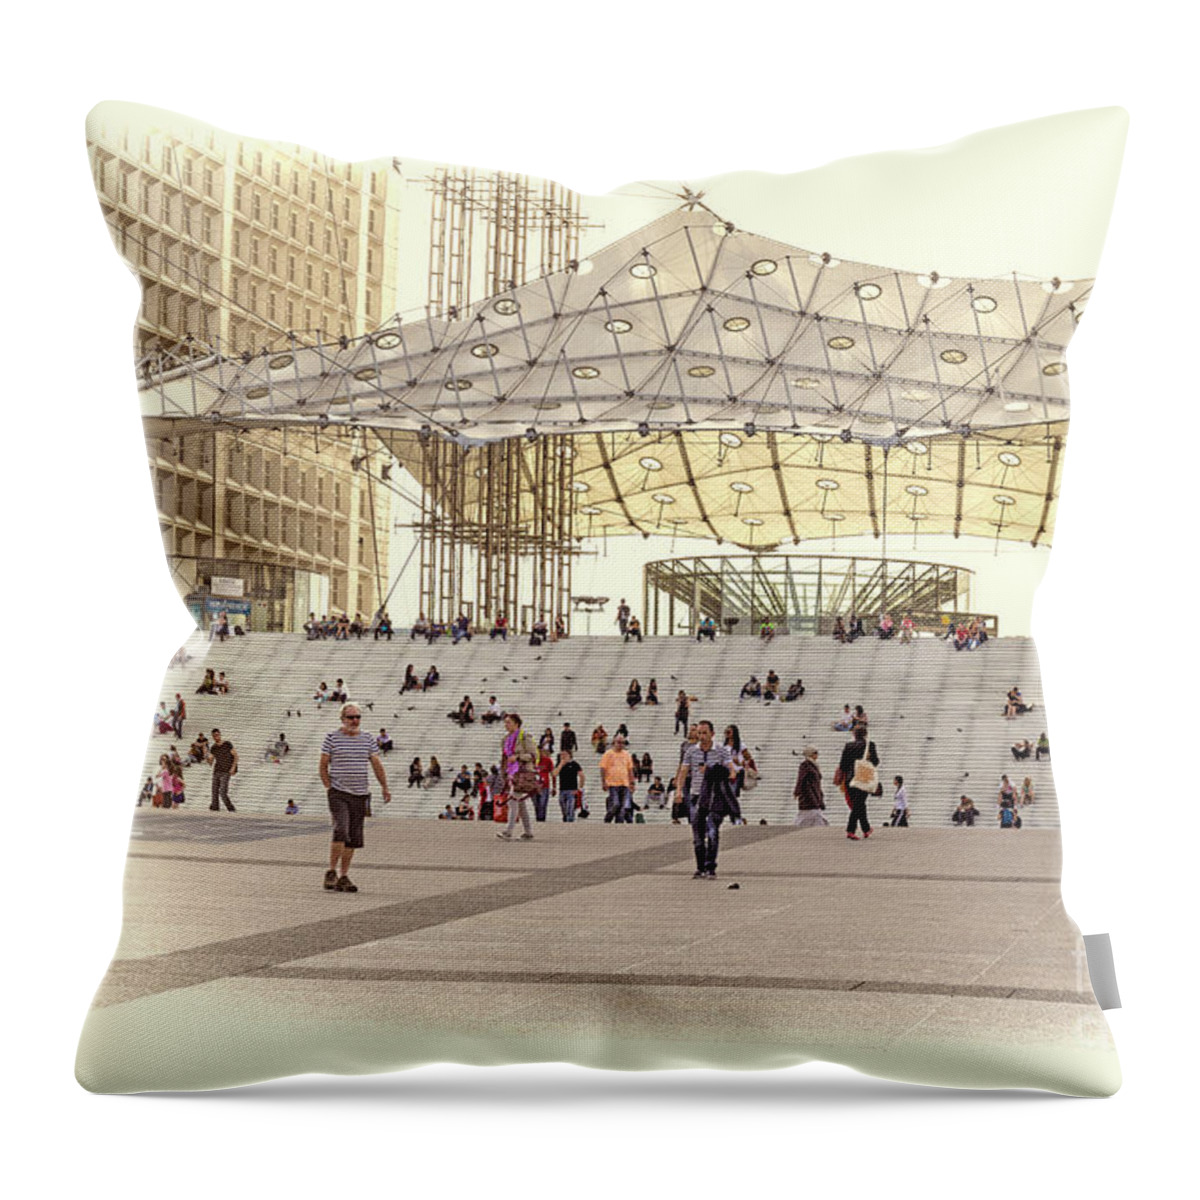 La Defense Throw Pillow featuring the photograph La Defense Paris France by Elaine Teague